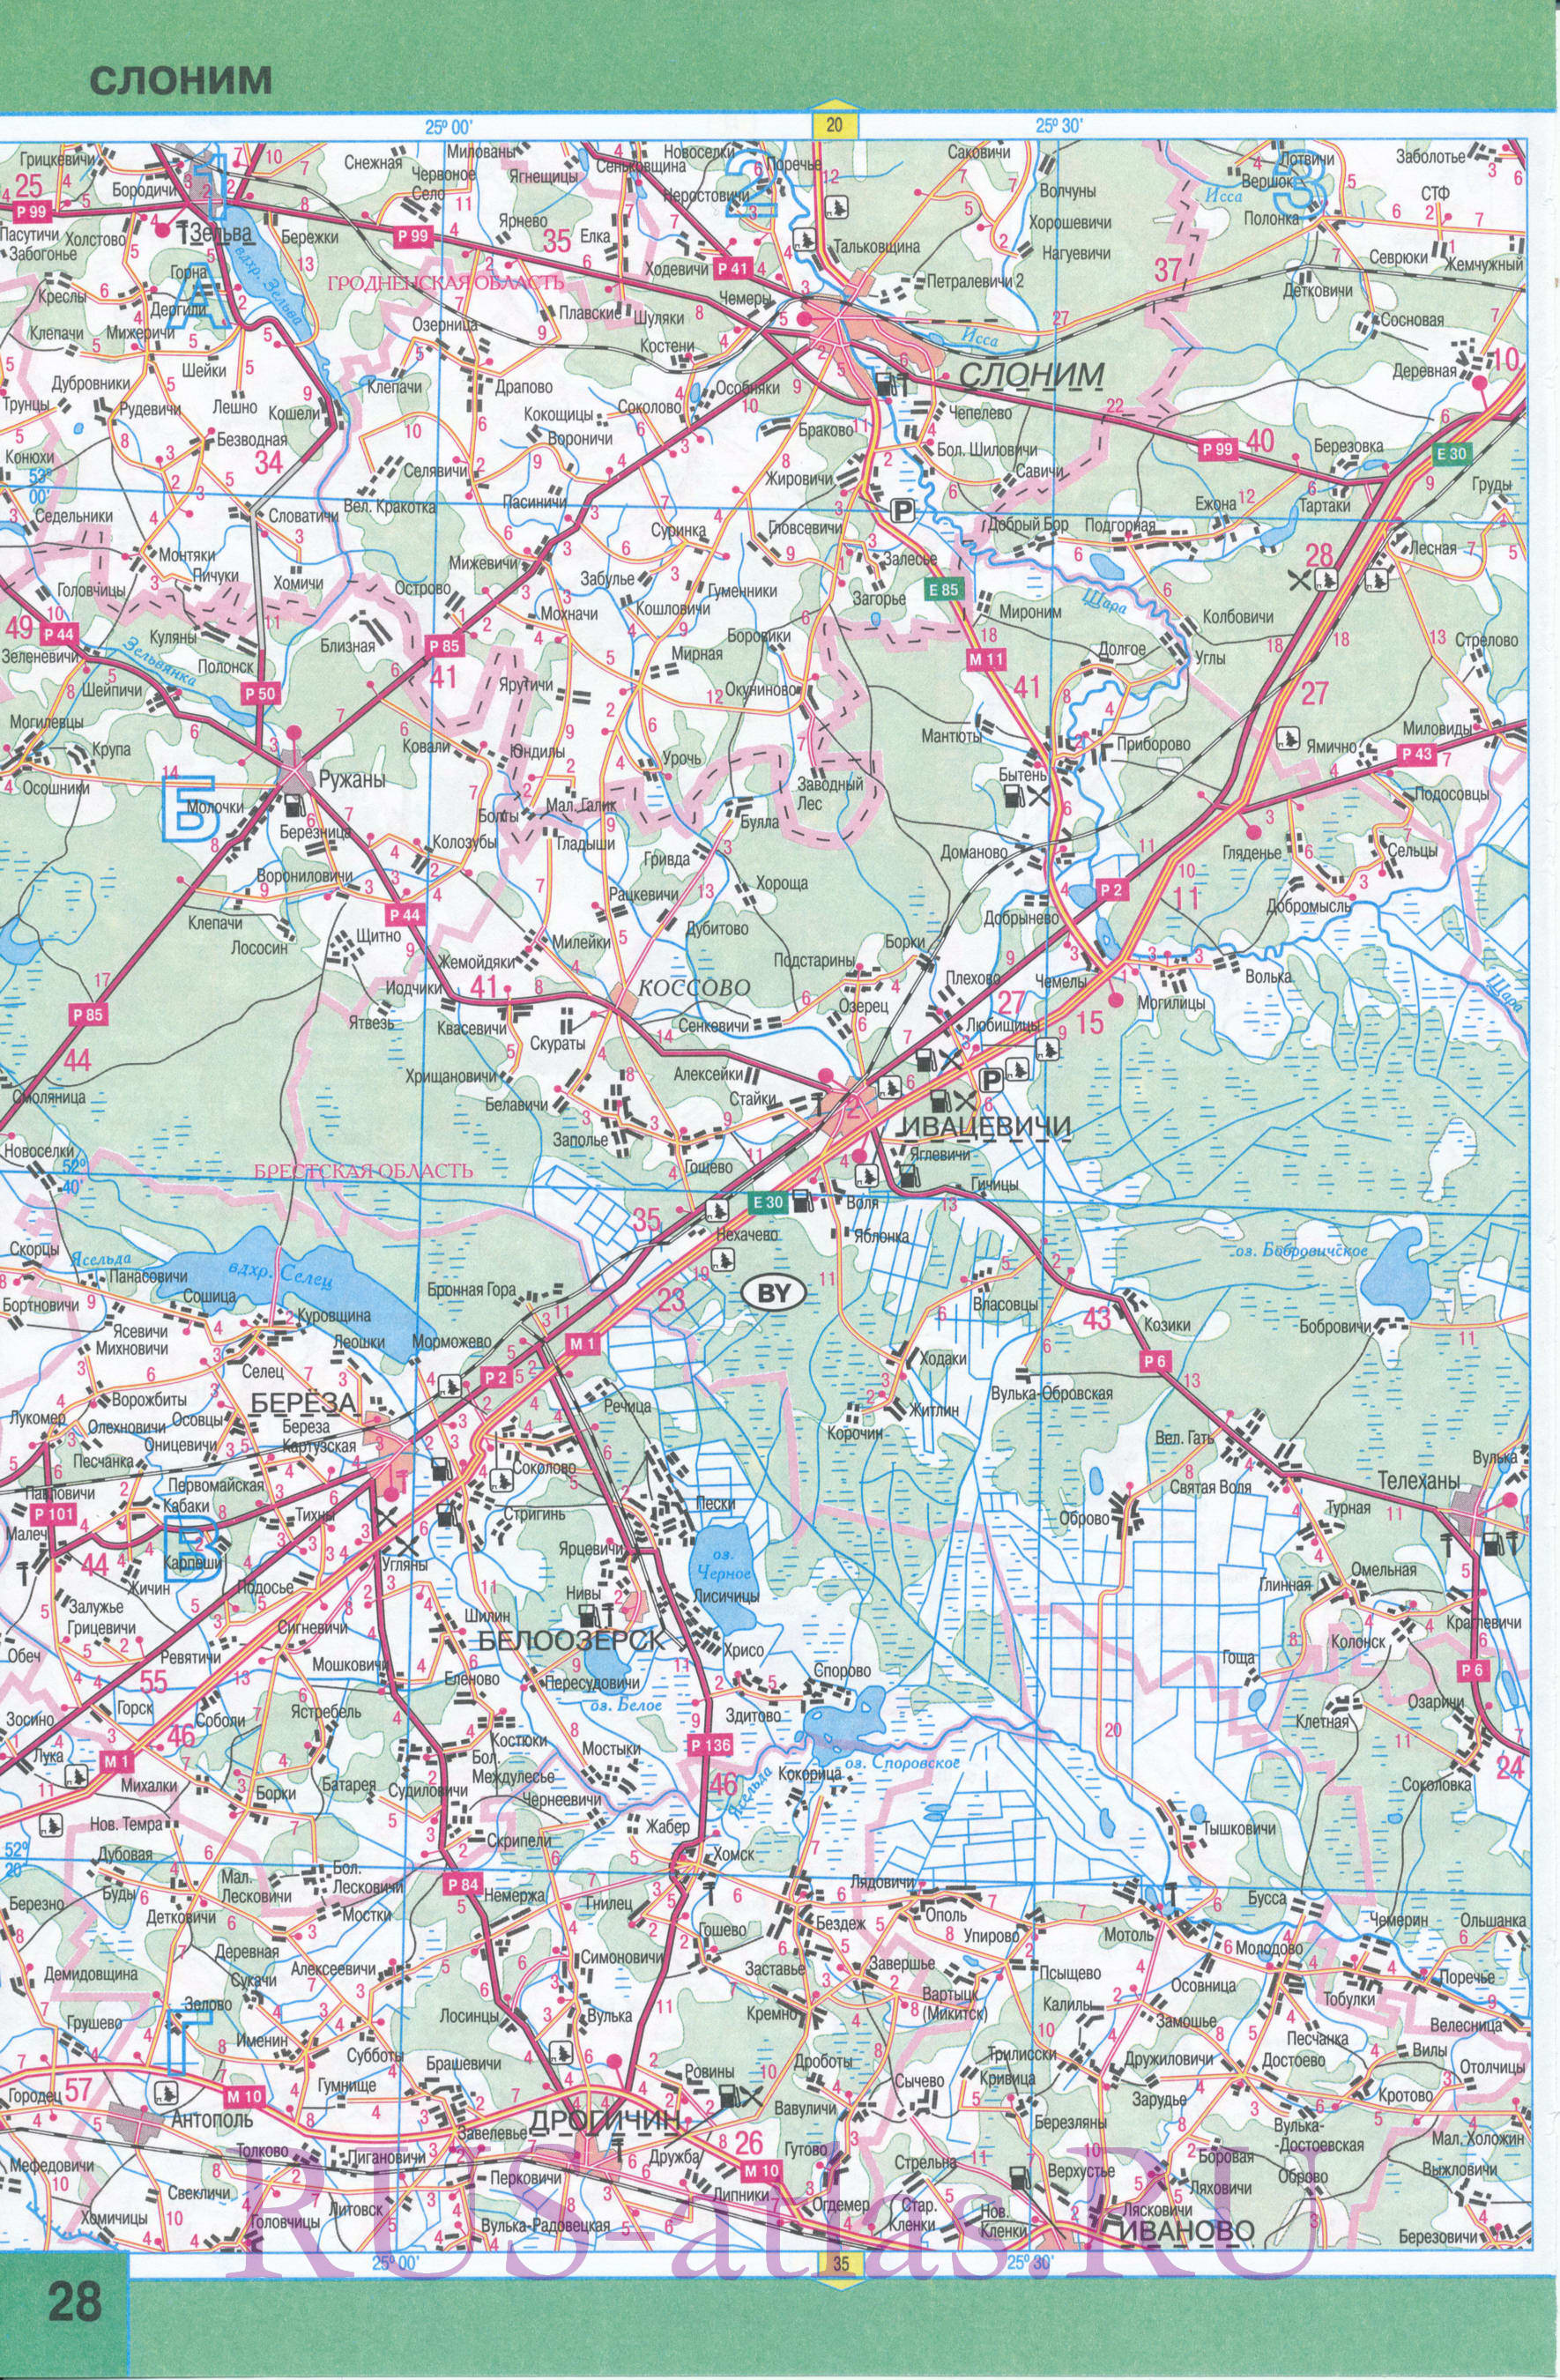 Карта Брестской области. Подробная карта Брестской области с городами и дорогами. Площадь Брестской обл 32800 кв км, население 1433100 человек, B0 - 